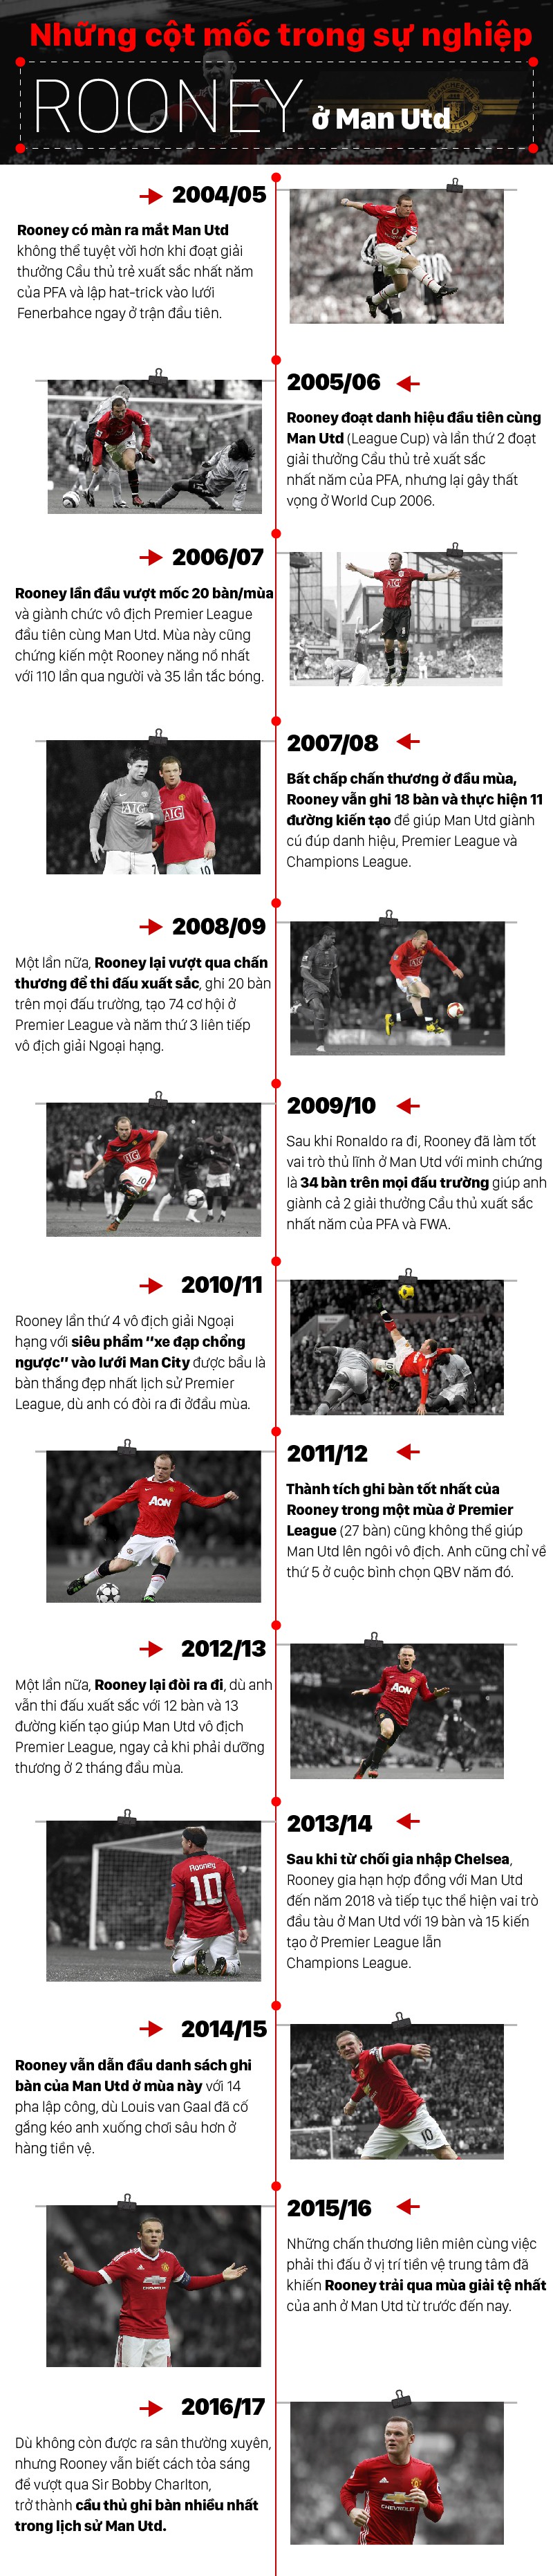 Những cột mốc trong sự nghiệp lẫy lừng của Rooney ở Man Utd